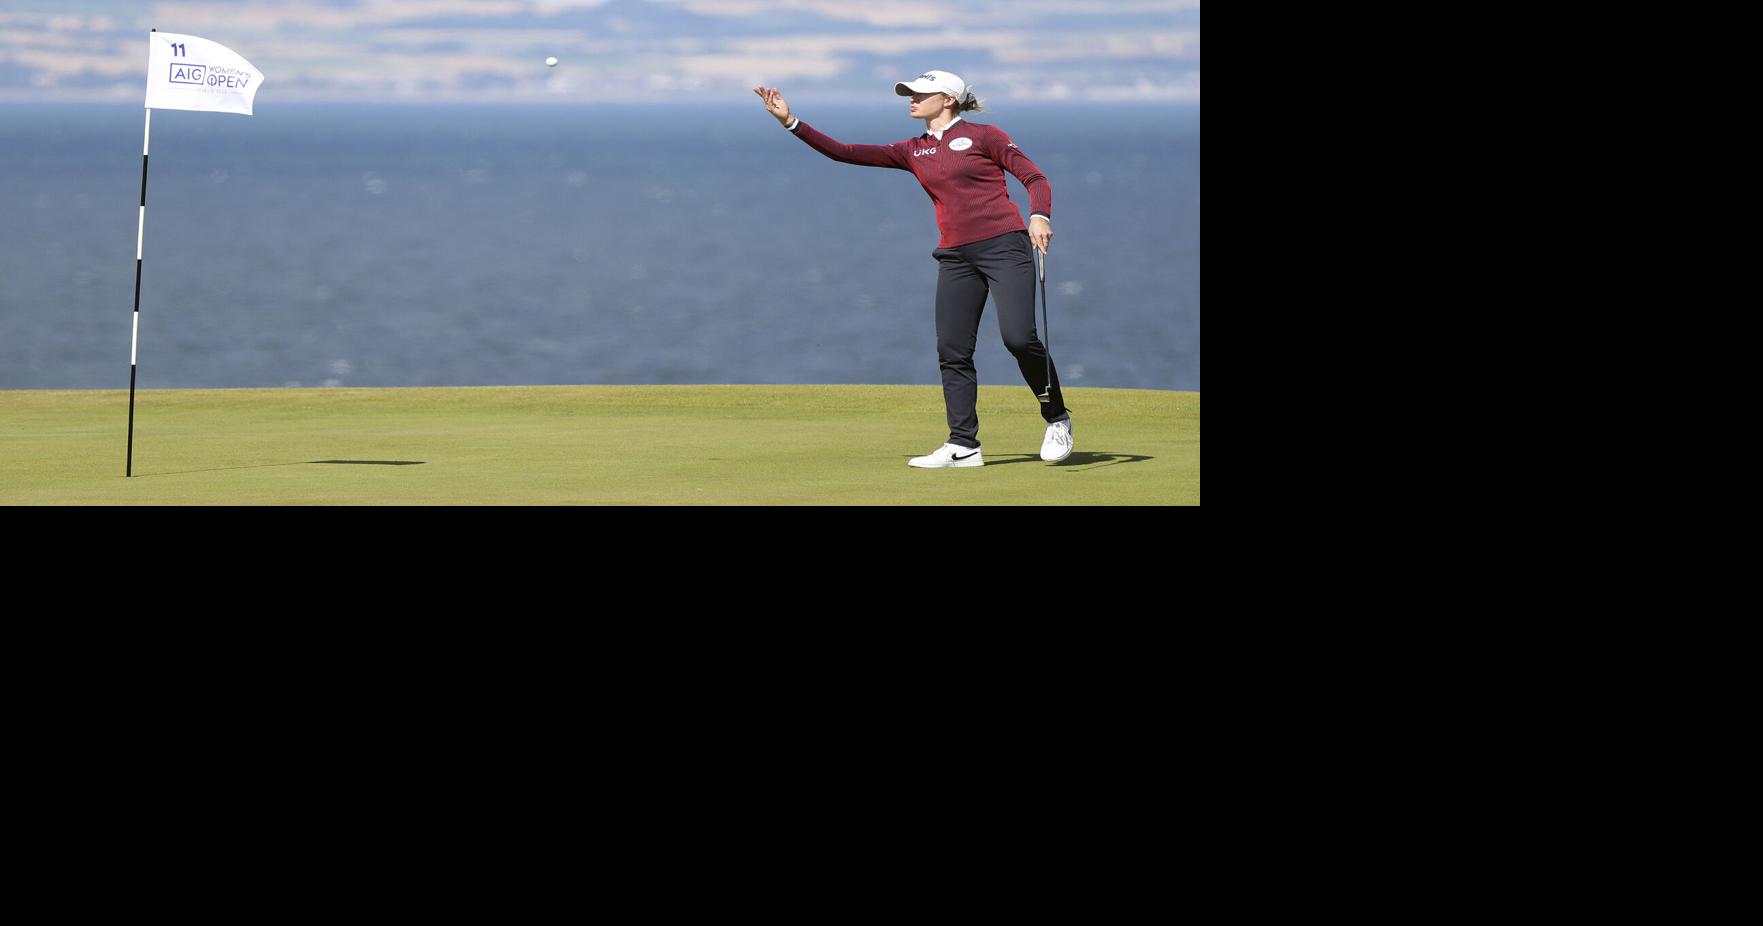 Golf: Korda remonta para vencer a su hermana en España |  Deportes